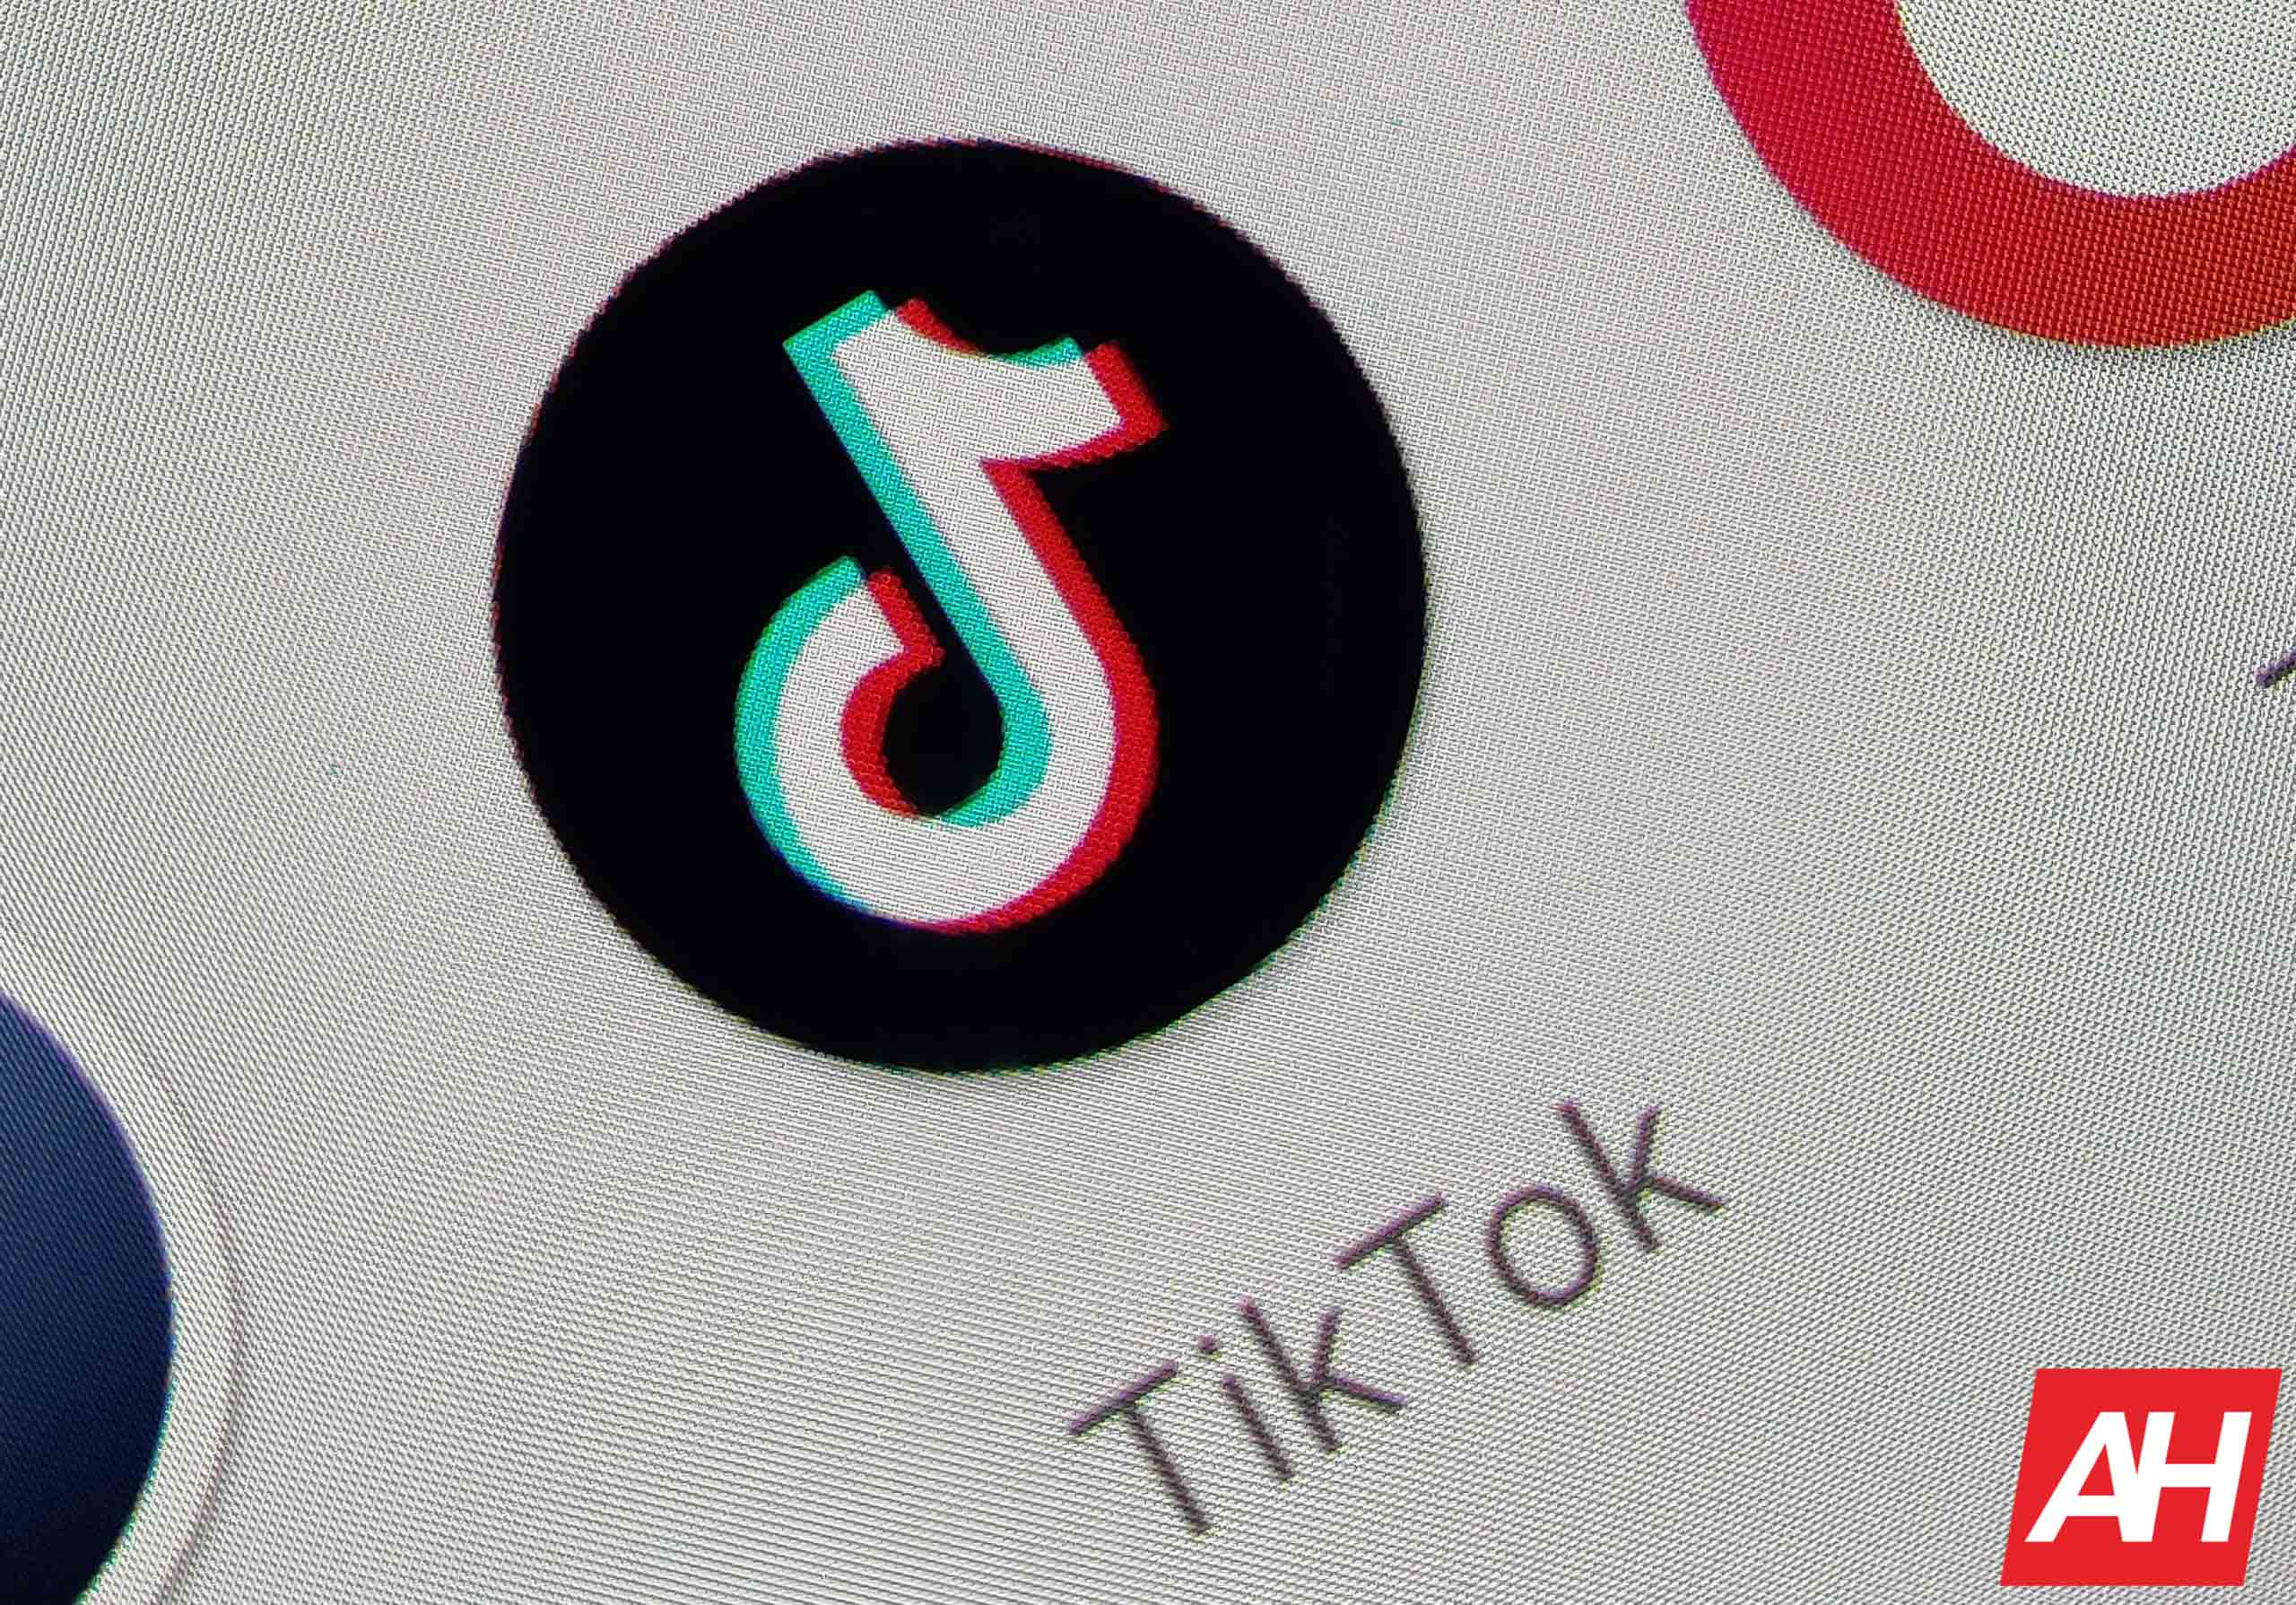 TikTok pronto introducirá campañas de redes sociales con IA generativa